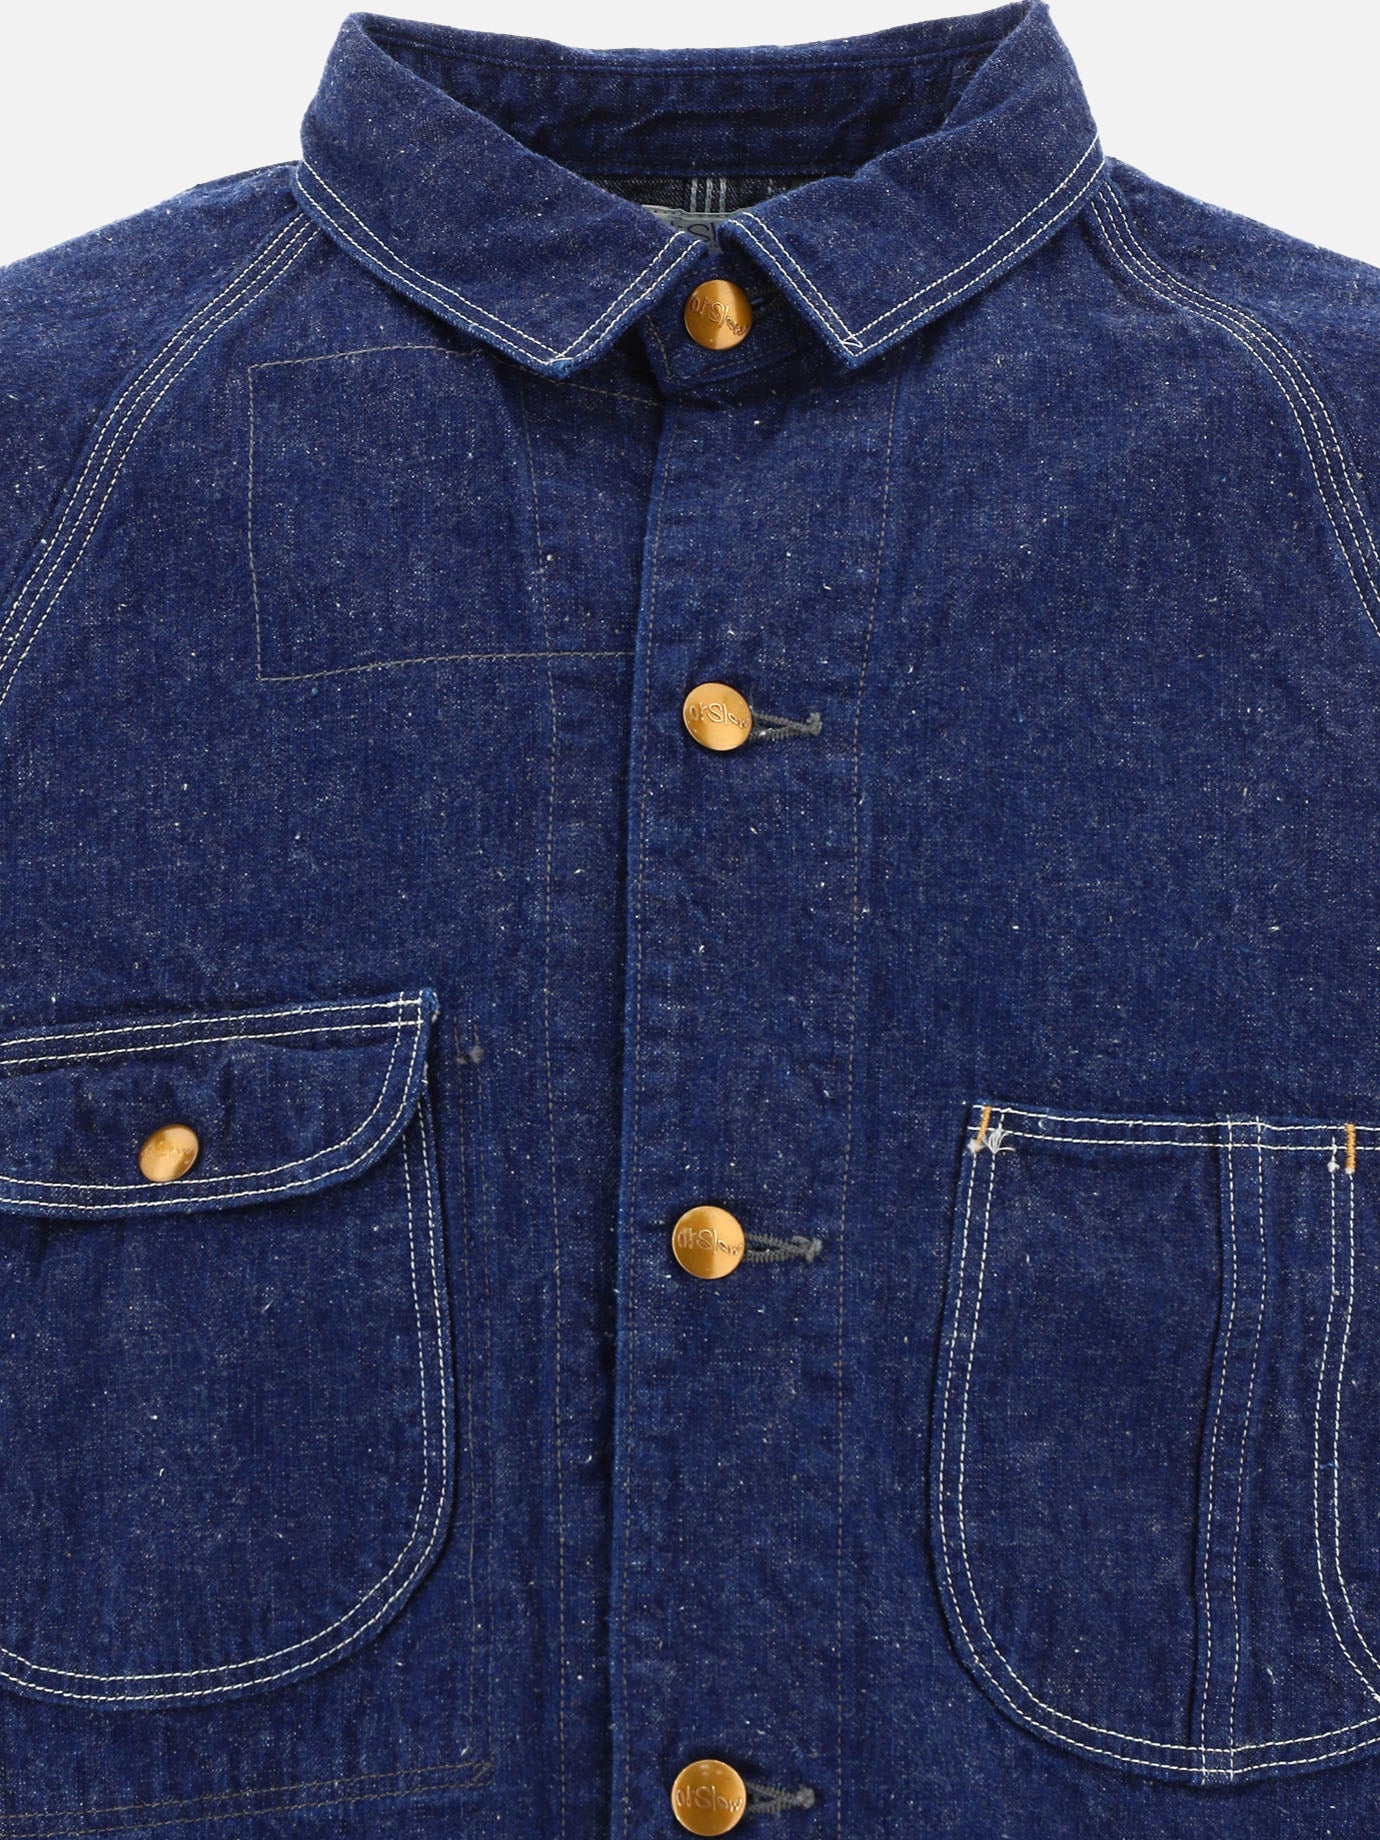 "1950'S" overshirt jacket